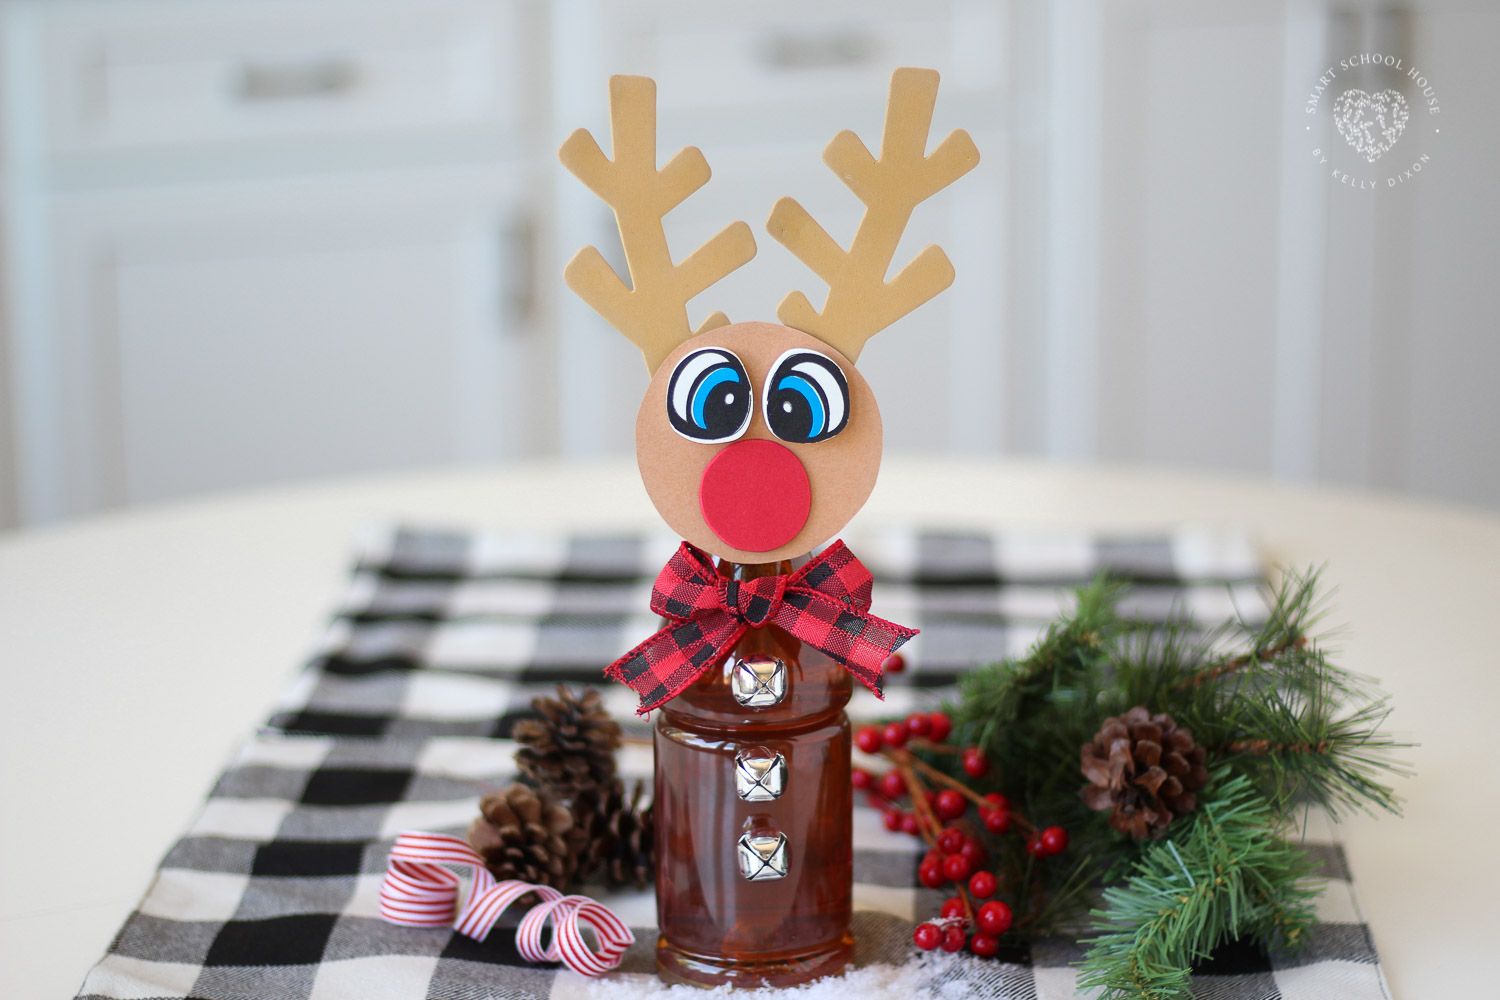 Tea Bottle Rudolph! An adorable reindeer craft idea using a bottle of iced tea. 